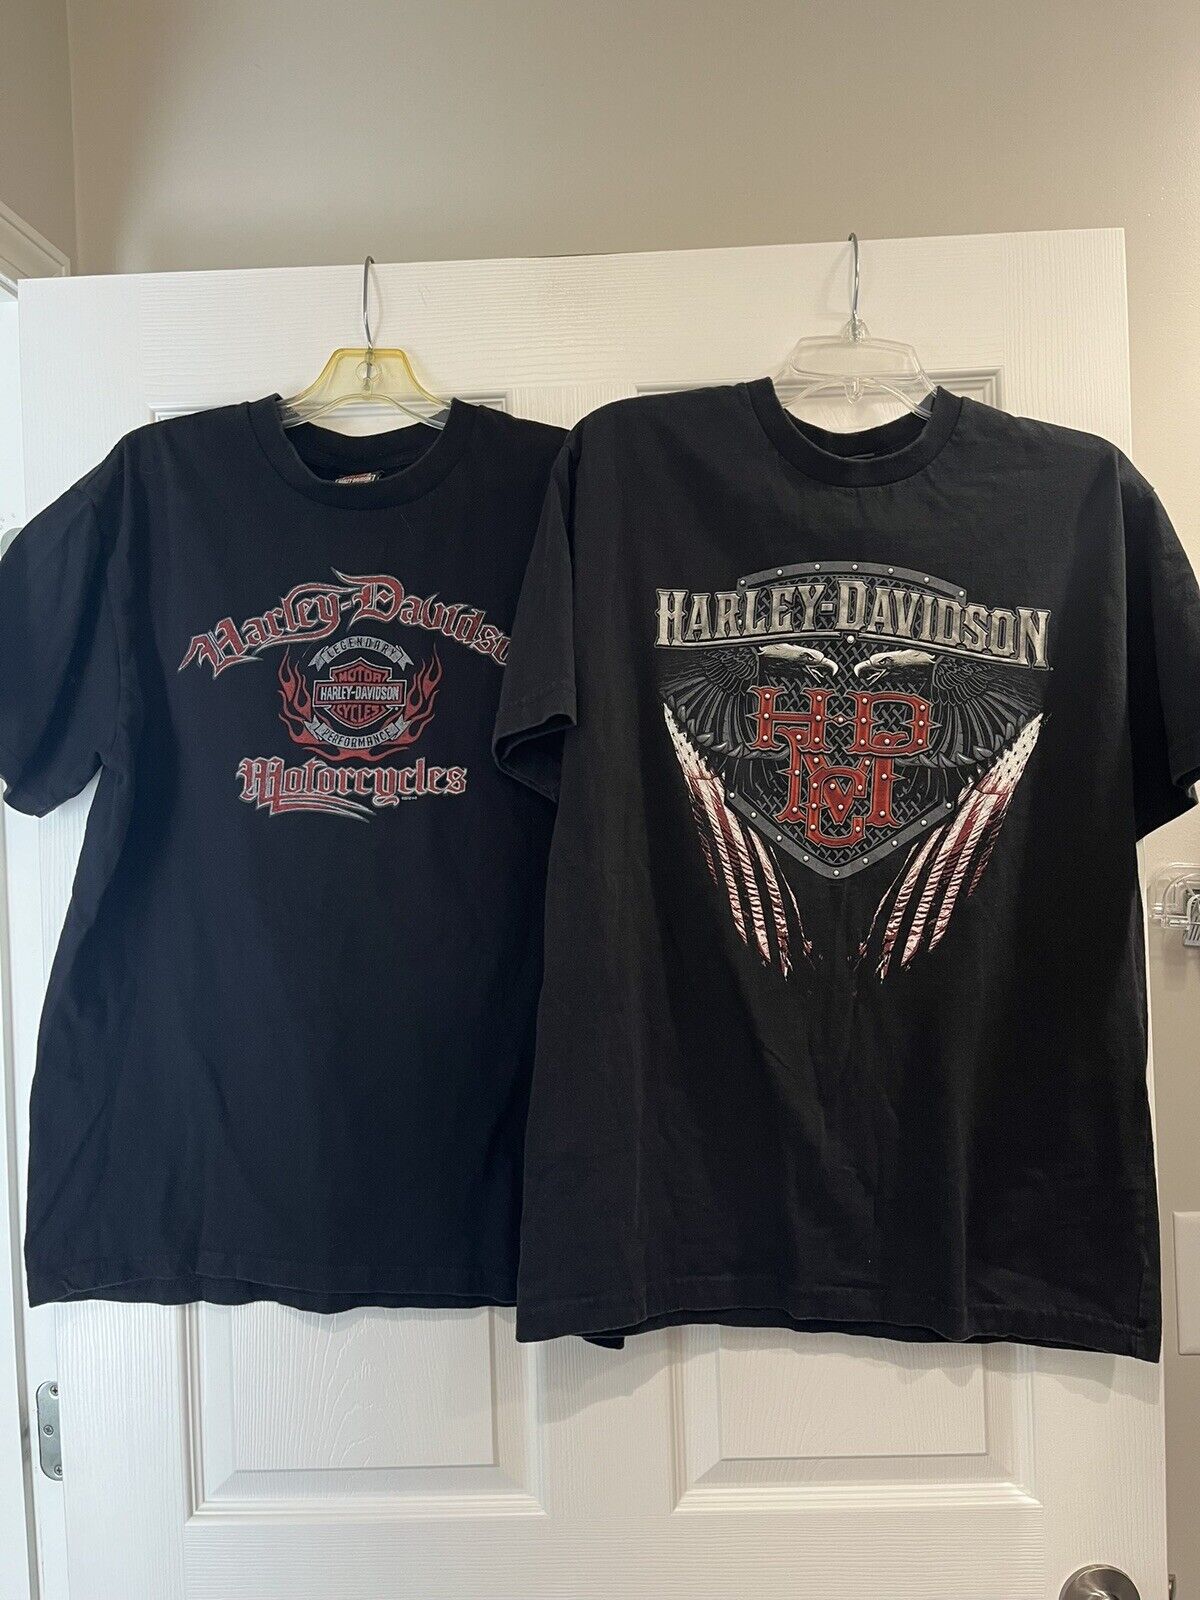 Harley-Davidson Size Large Set Of 2 Black T Shirts Short Sleeve Motorcycle